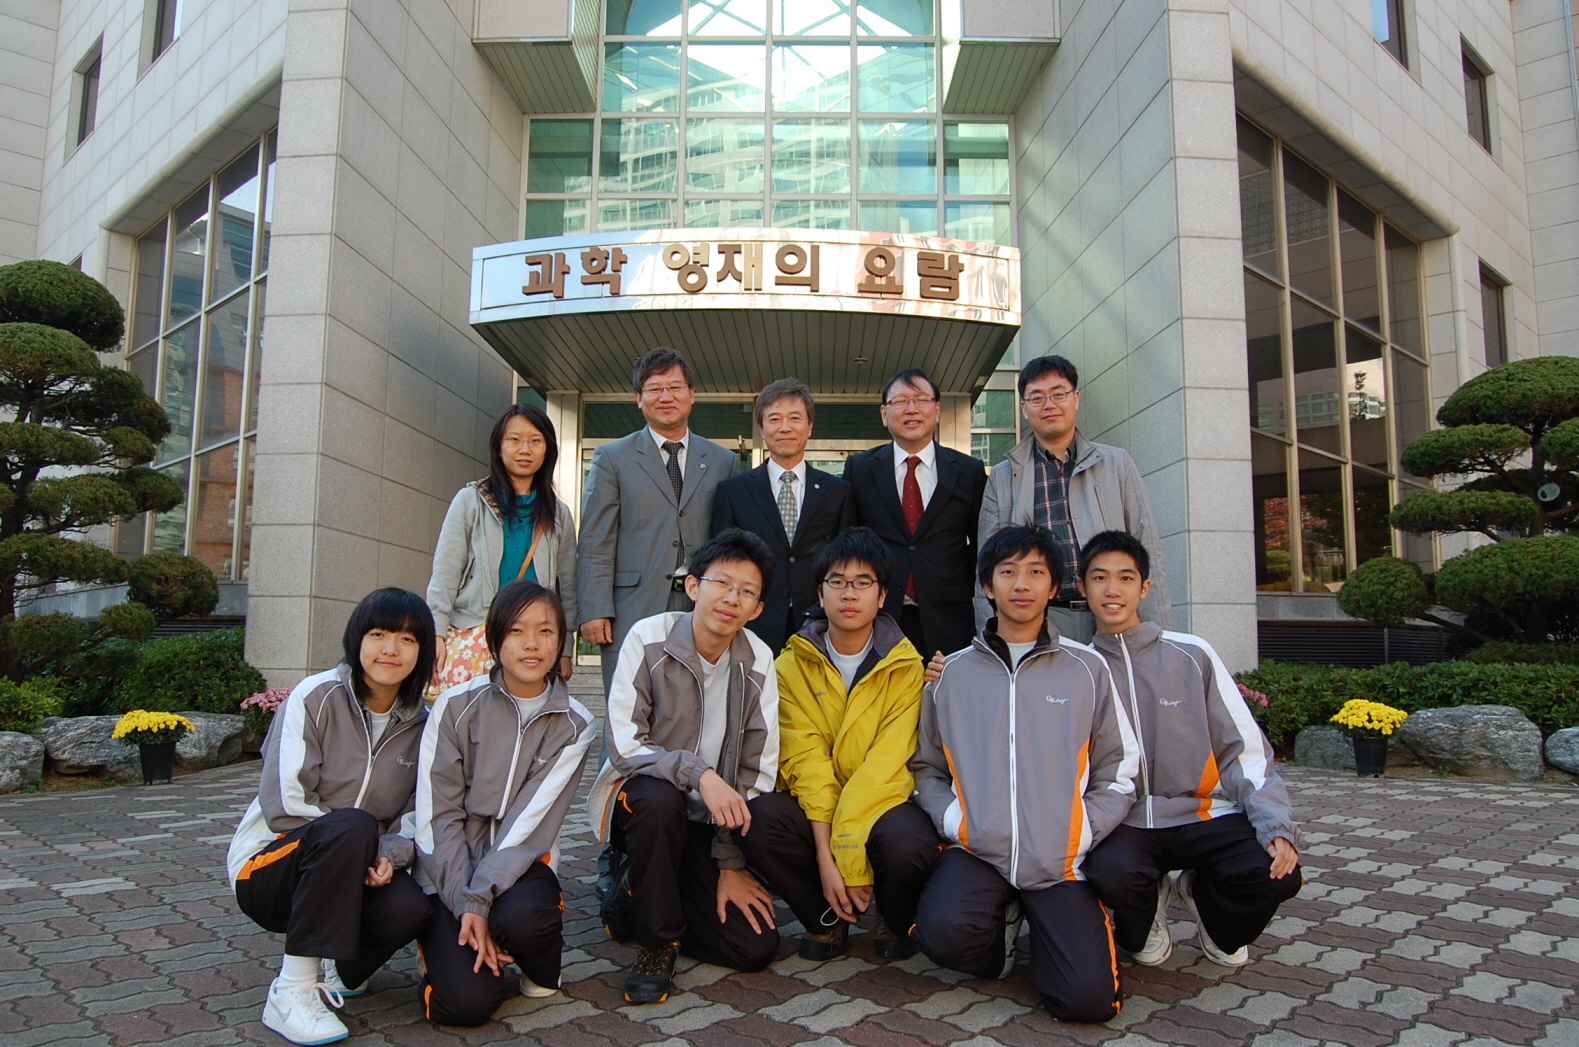 G.T. college 교환학생 프로그램 본교 방문 (2009.11.1 ~ 2009.11.7)